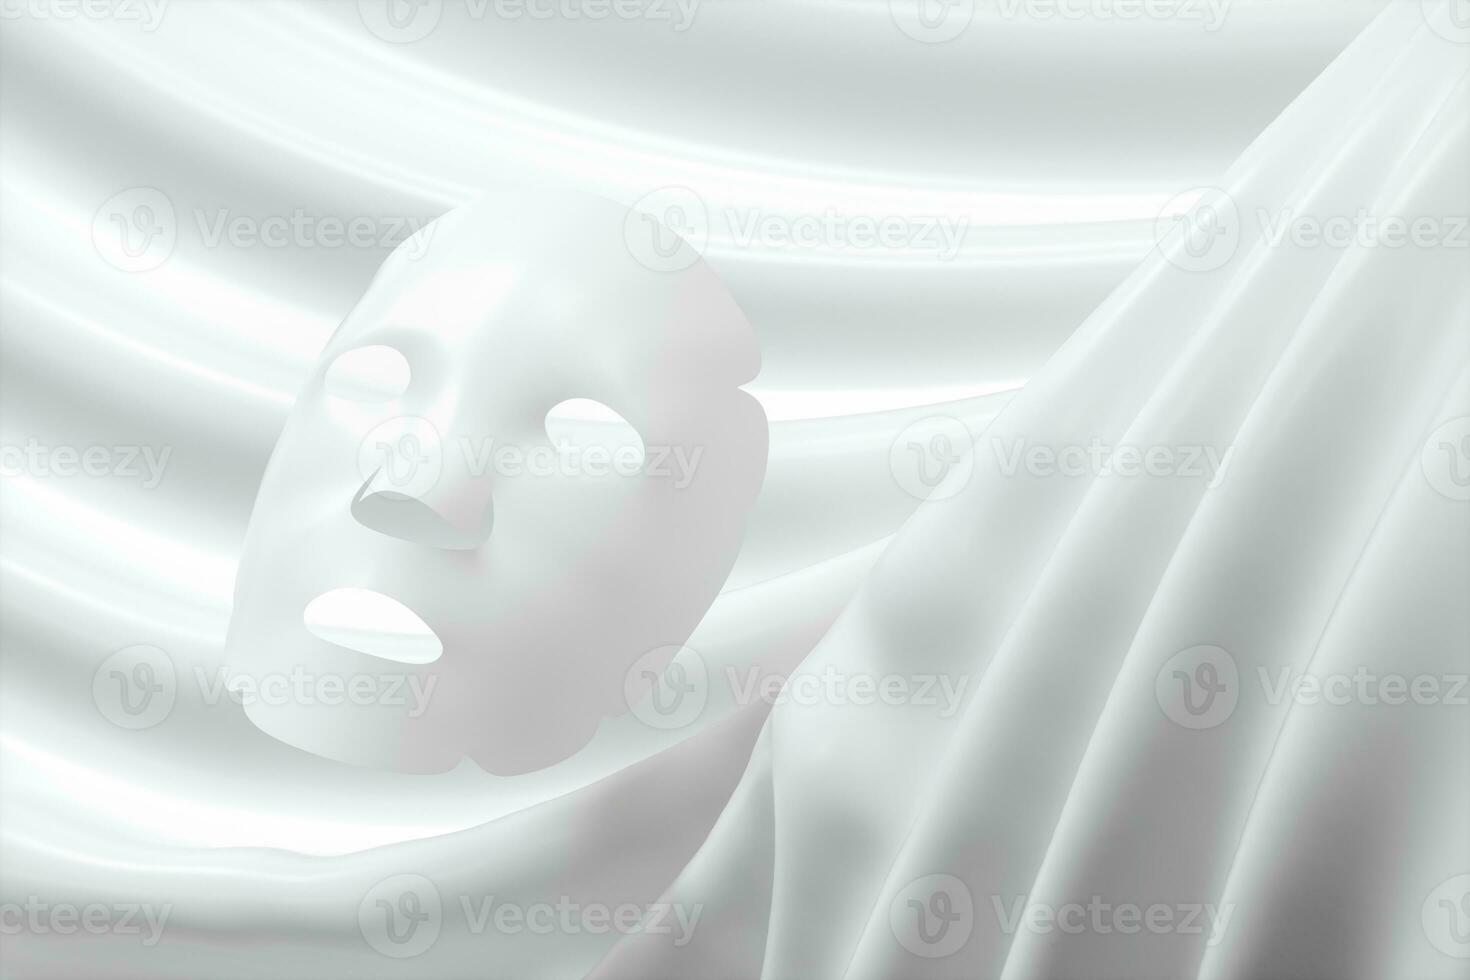 vit mask, hud vård begrepp, 3d tolkning foto